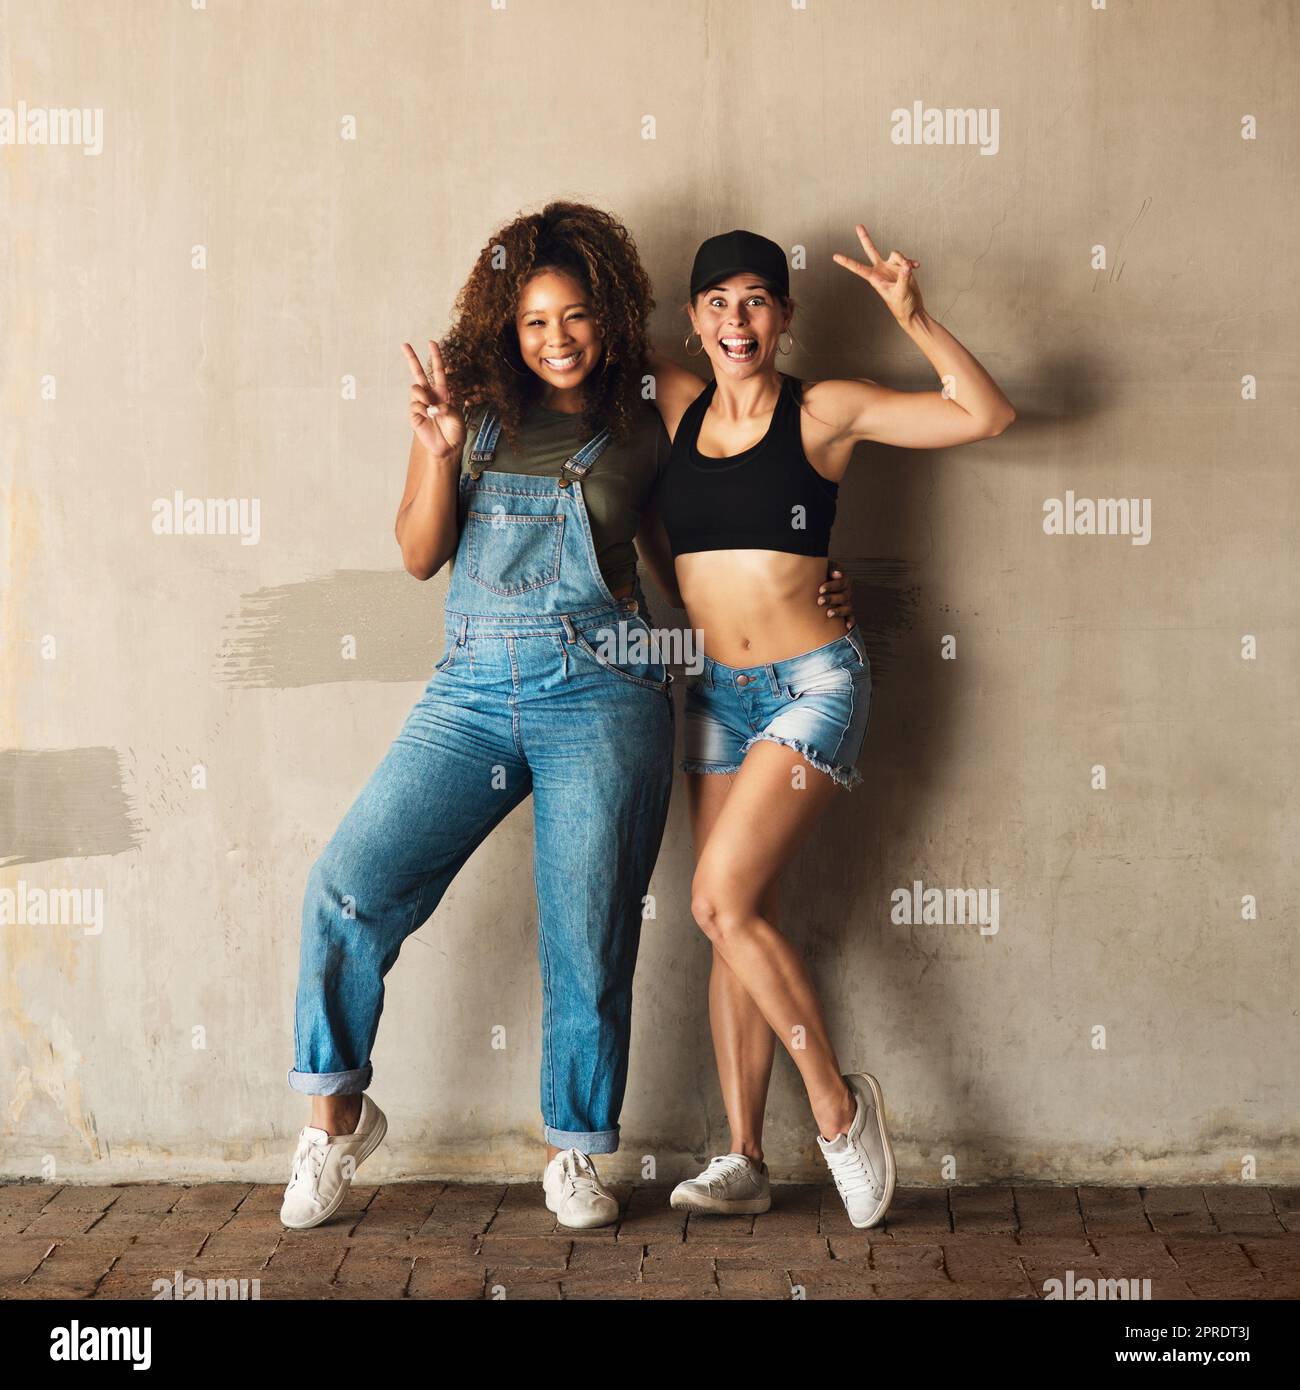 Veniamo in pace. Ritratto di due giovani donne allegre in posa per una foto mentre si appoggiano a una parete all'esterno durante il giorno. Foto Stock